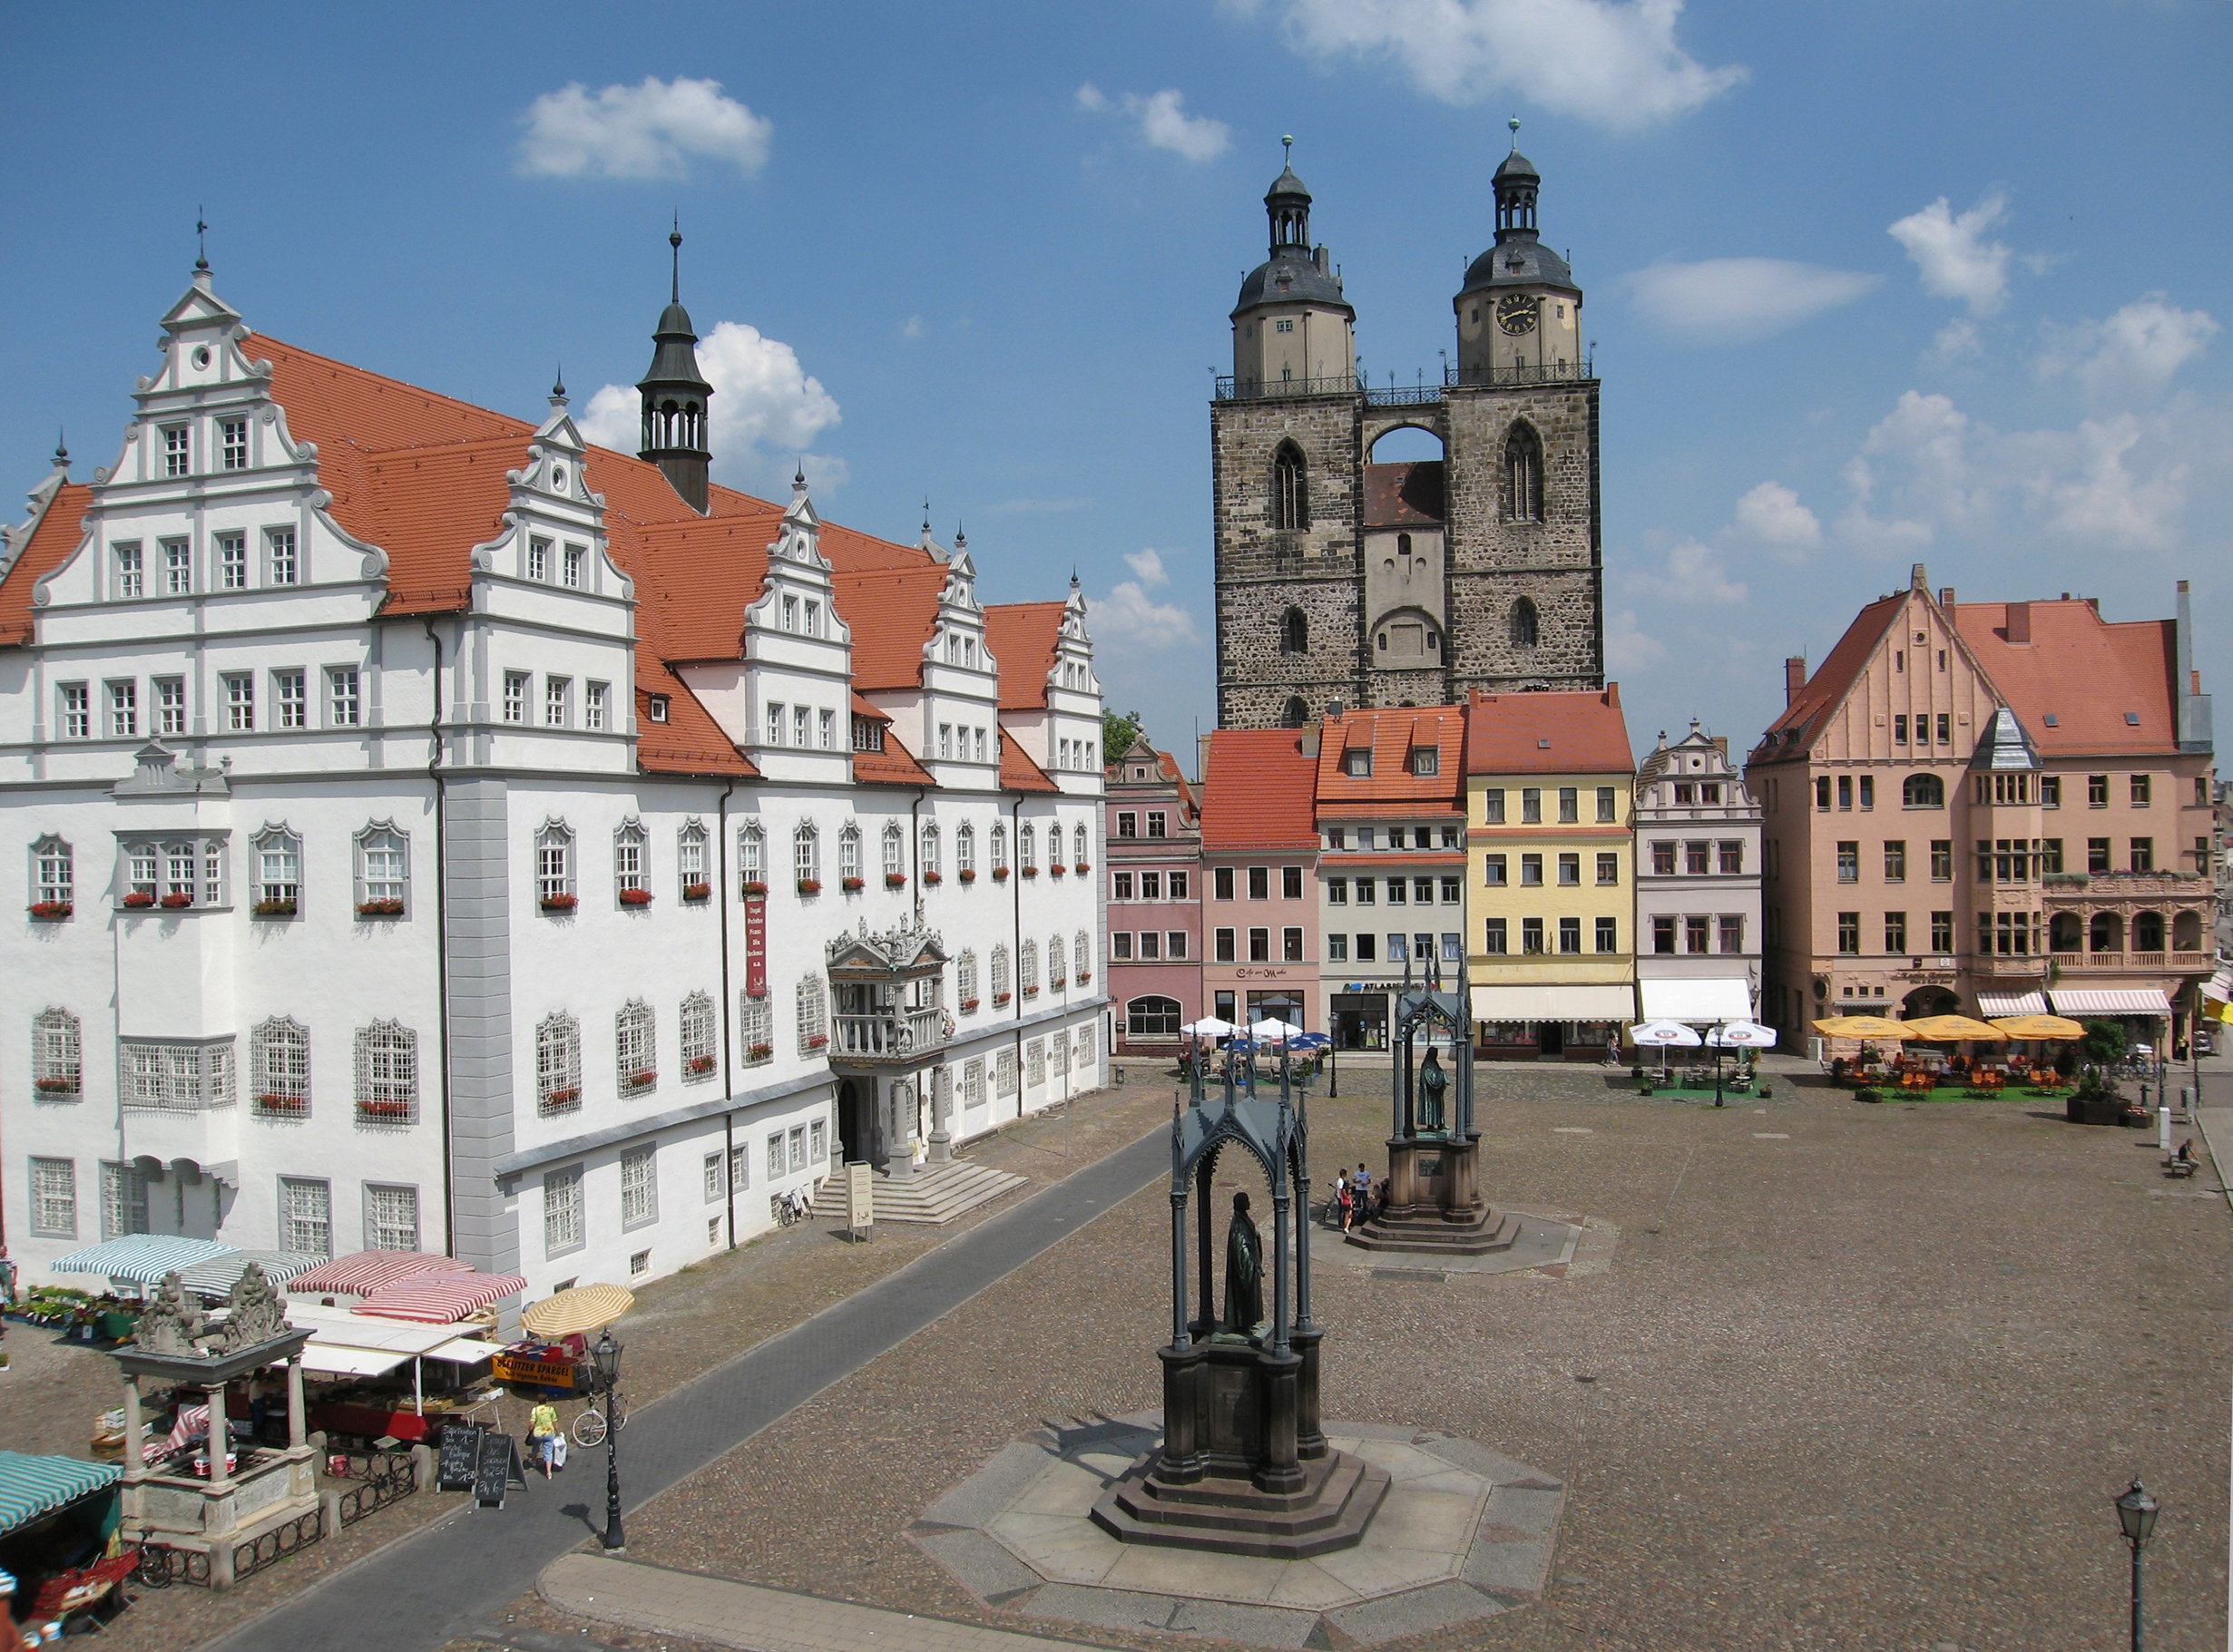 Marktplatz und Rathaus Wittenberg.
